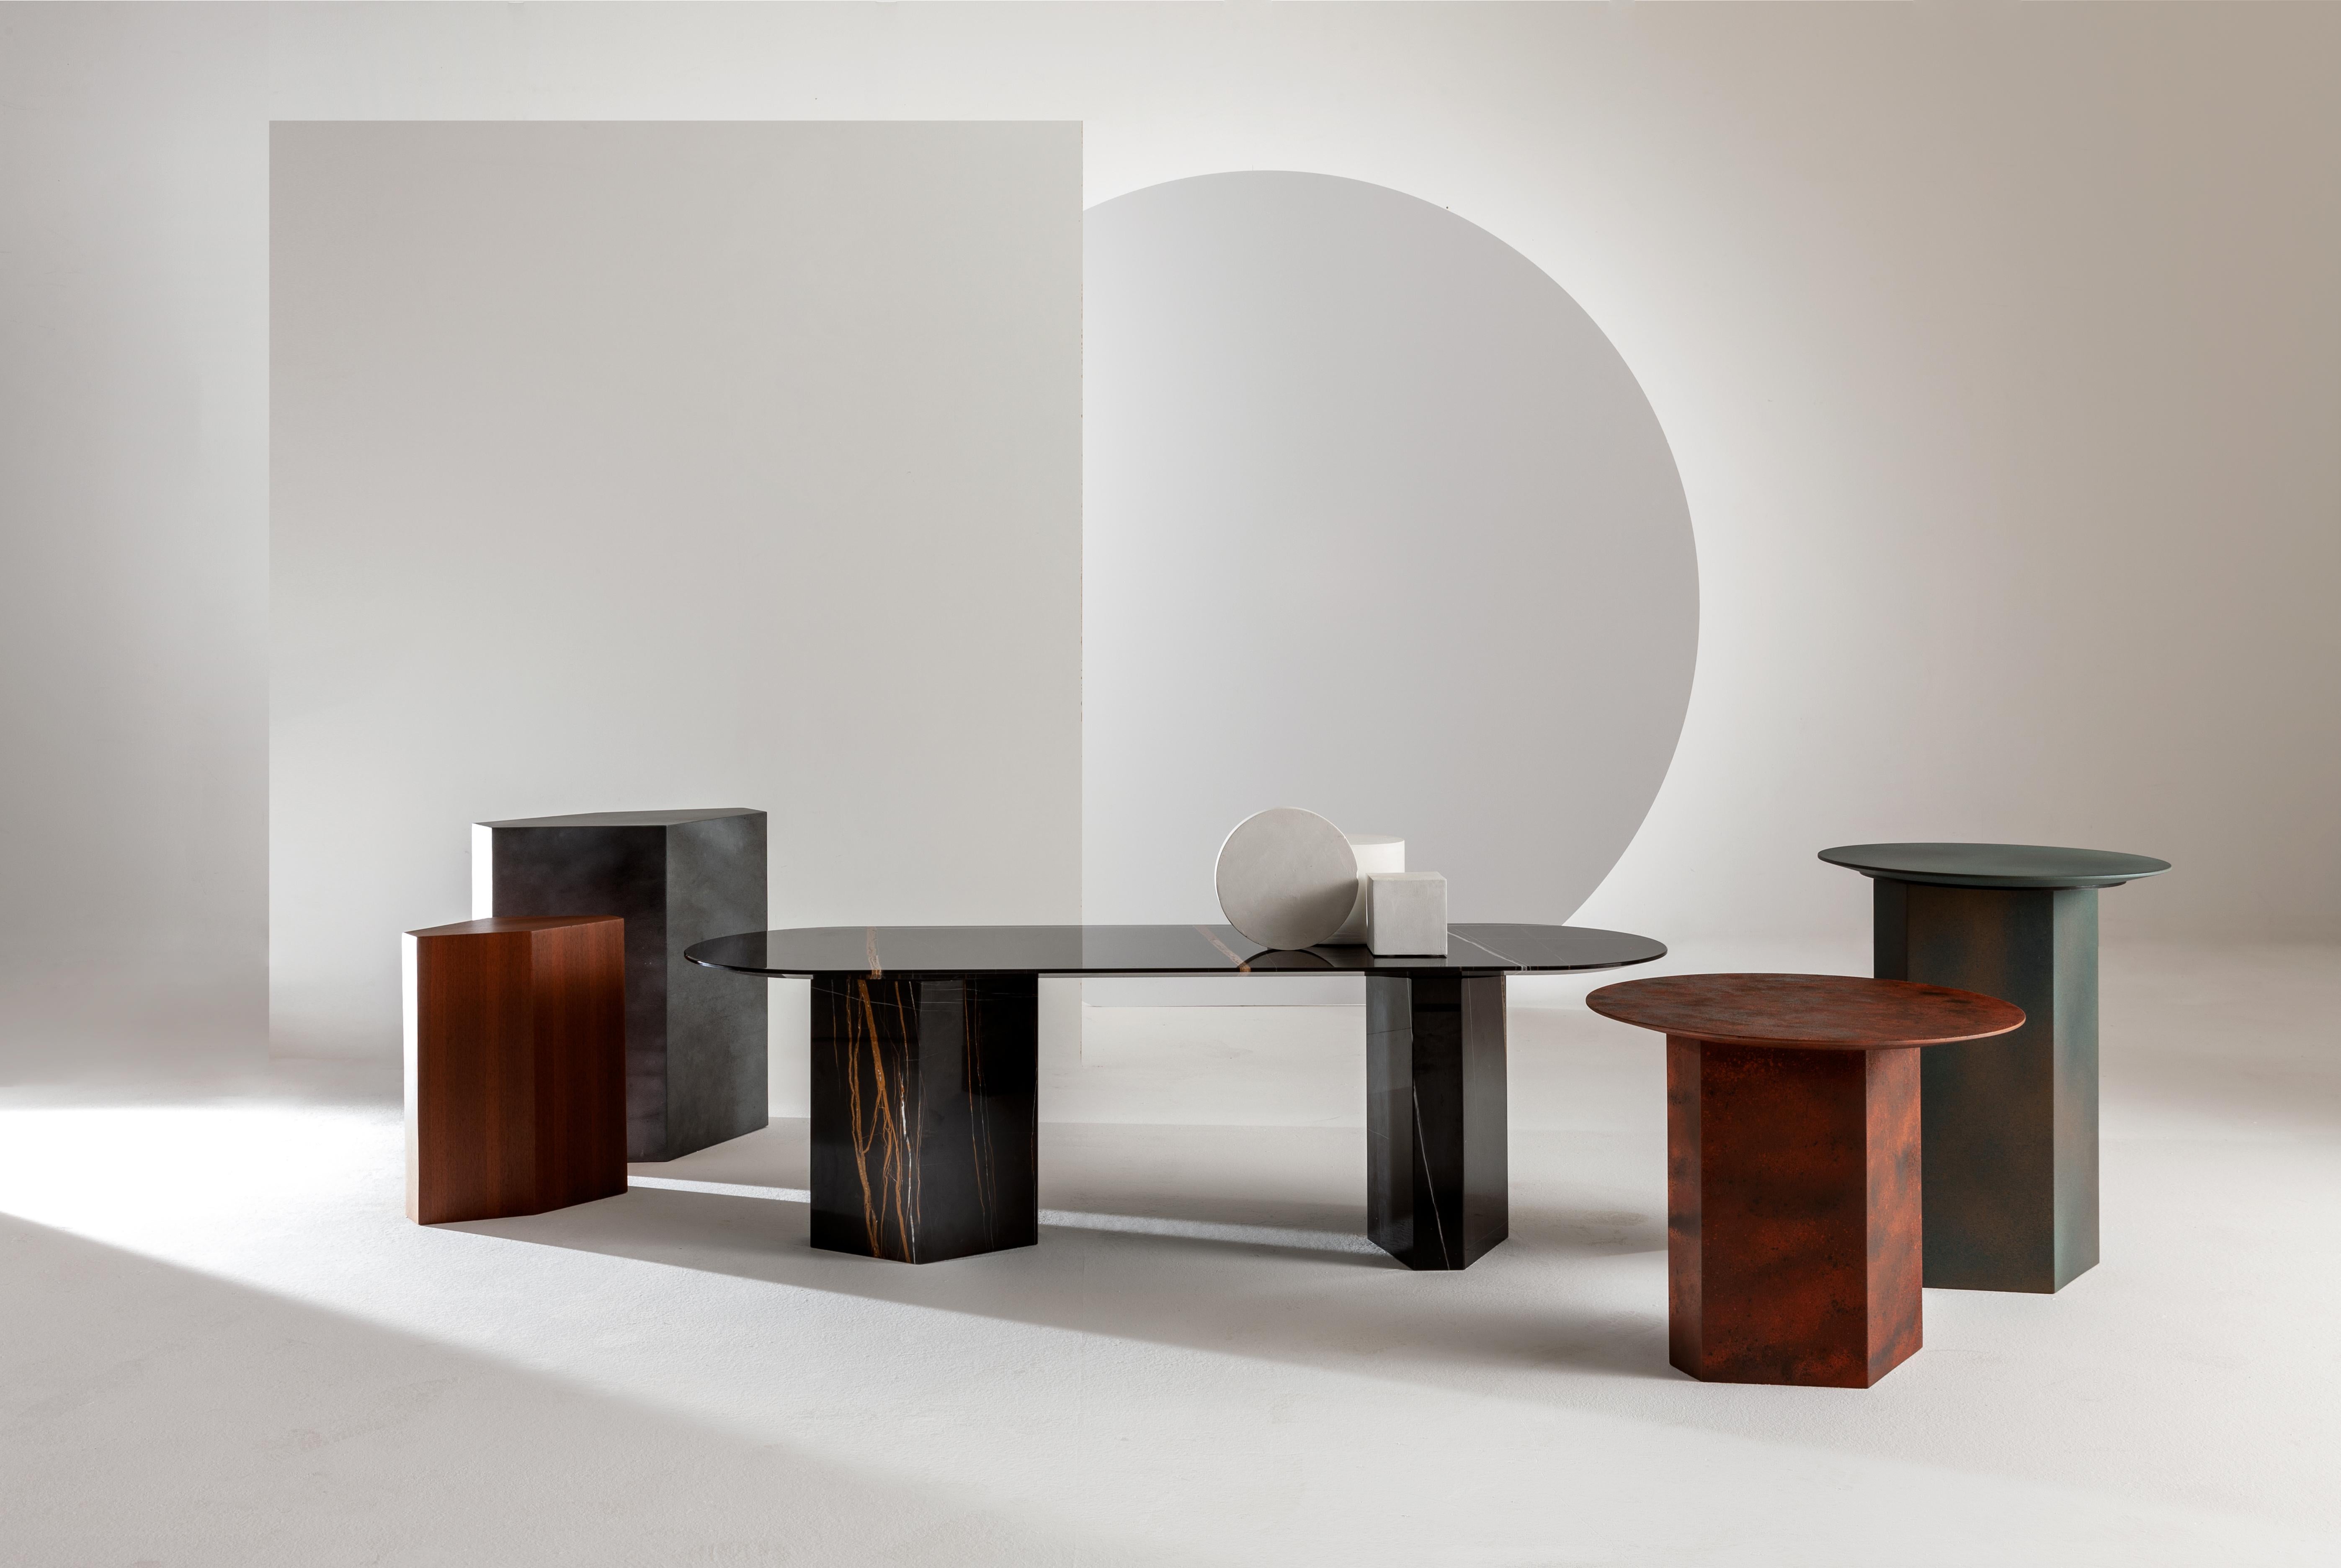 Niedriger Tisch mit sechseckiger Basis und runder Platte mit Ruggine-Dekor.

Als Teil der Collection'S Imperfetto greifen sie das moderne Design des Tisches aus derselben Kollektion mit Eleganz und Stil auf.

Sie sind in verschiedenen Größen und